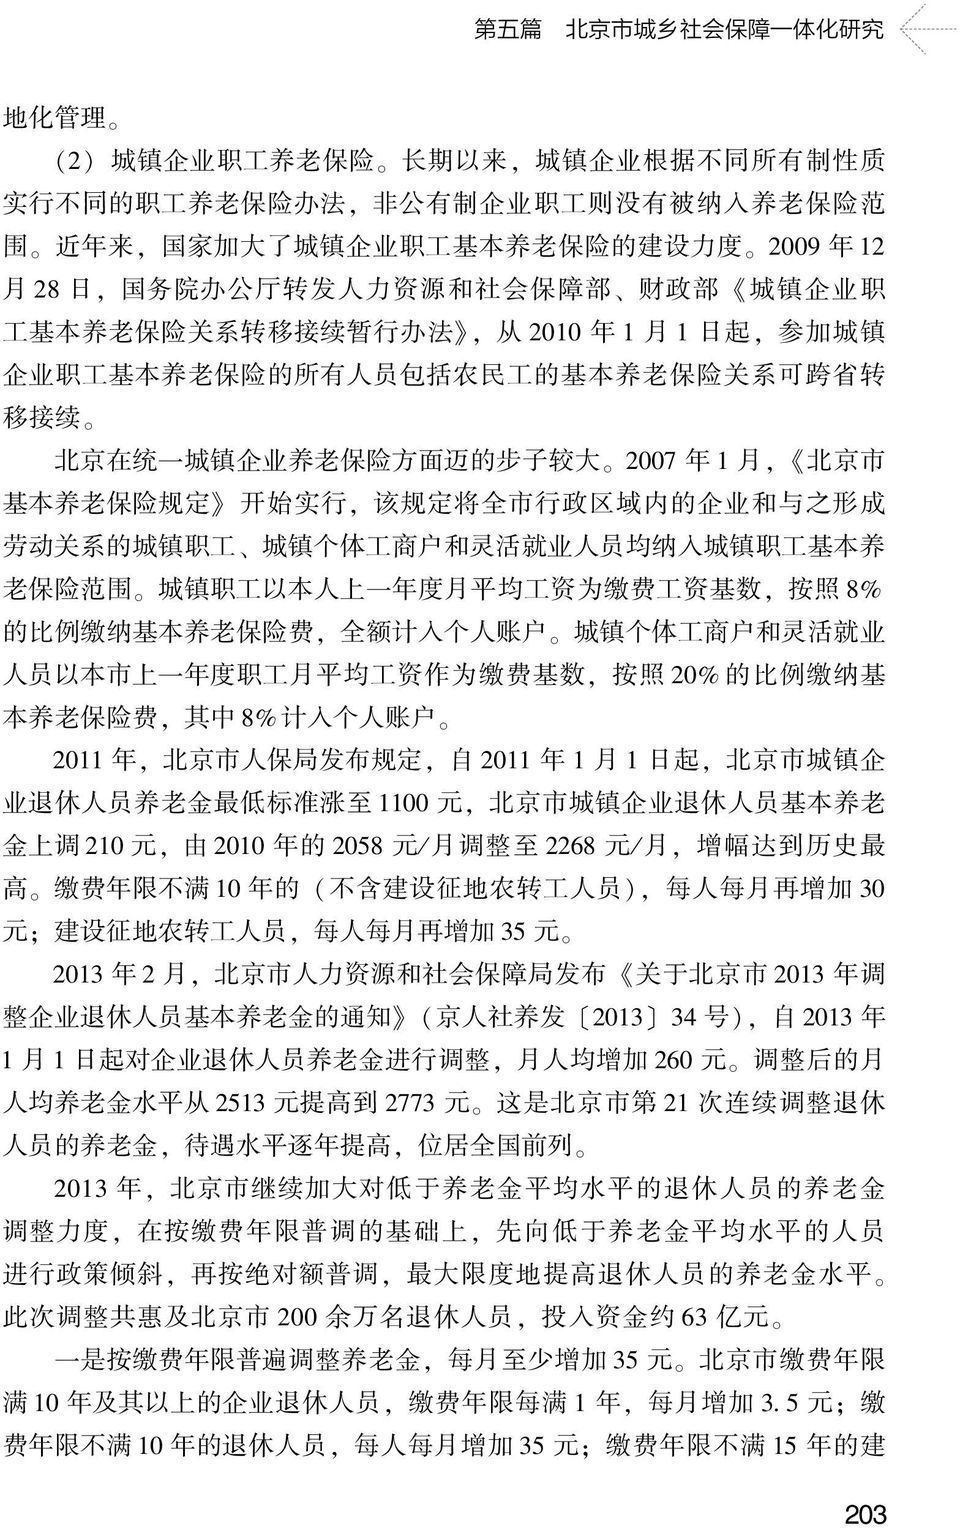 养 老 保 险 关 系 可 跨 省 转 移 接 续 北 京 在 统 一 城 镇 企 业 养 老 保 险 方 面 迈 的 步 子 较 大 2007 年 1 月, 北 京 市 基 本 养 老 保 险 规 定 开 始 实 行, 该 规 定 将 全 市 行 政 区 域 内 的 企 业 和 与 之 形 成 劳 动 关 系 的 城 镇 职 工 城 镇 个 体 工 商 户 和 灵 活 就 业 人 员 均 纳